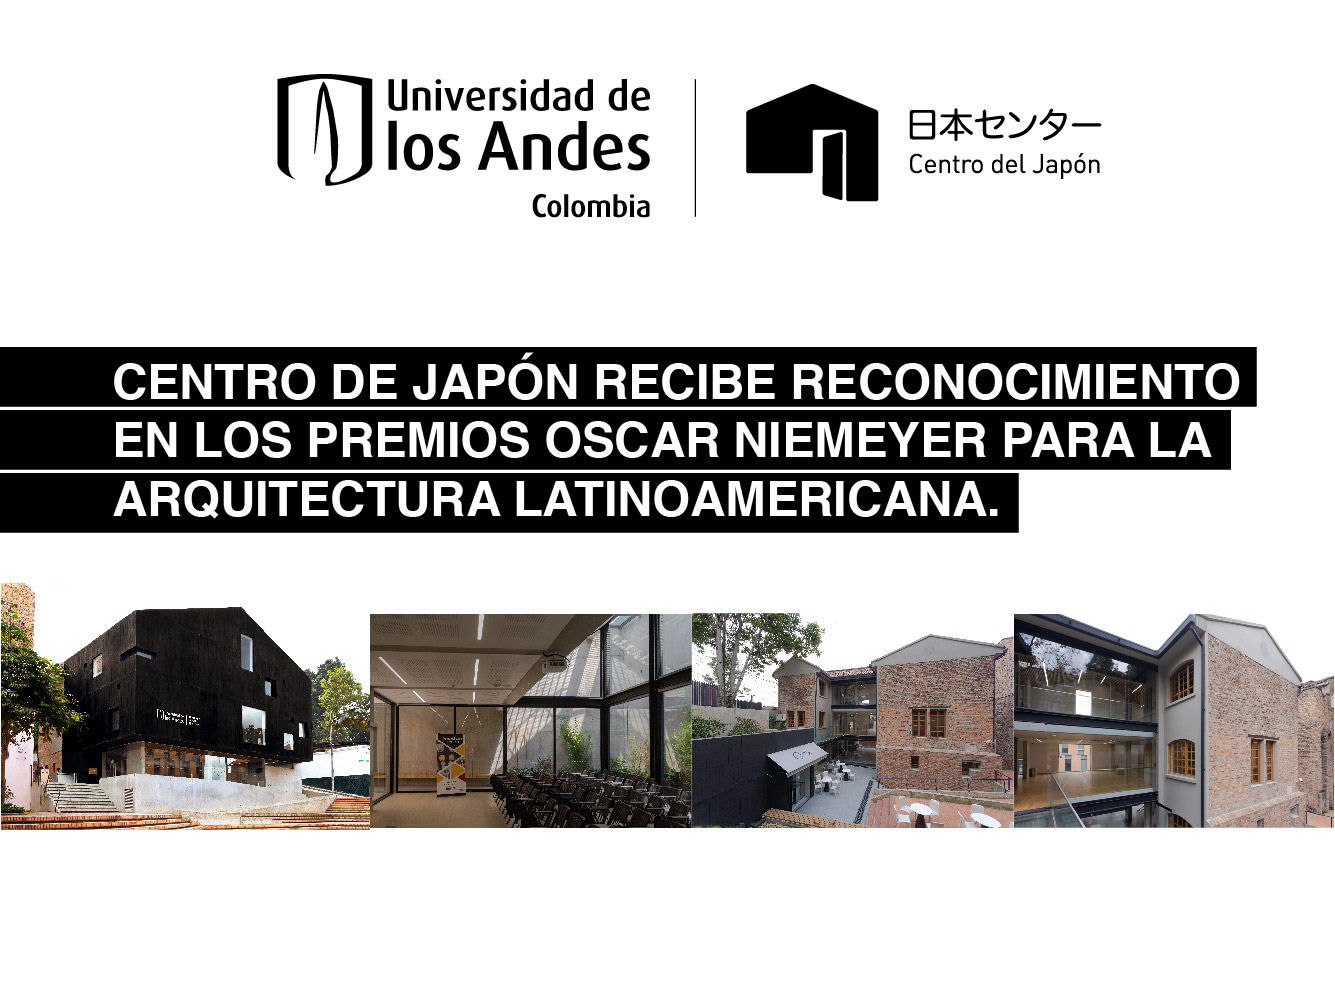 CENTRO DE JAPÓN RECIBE RECONOCIMIENTO EN LOS PREMIOS OSCAR NIEMEYER PARA LA ARQUITECTURA LATINOAMERICANA.